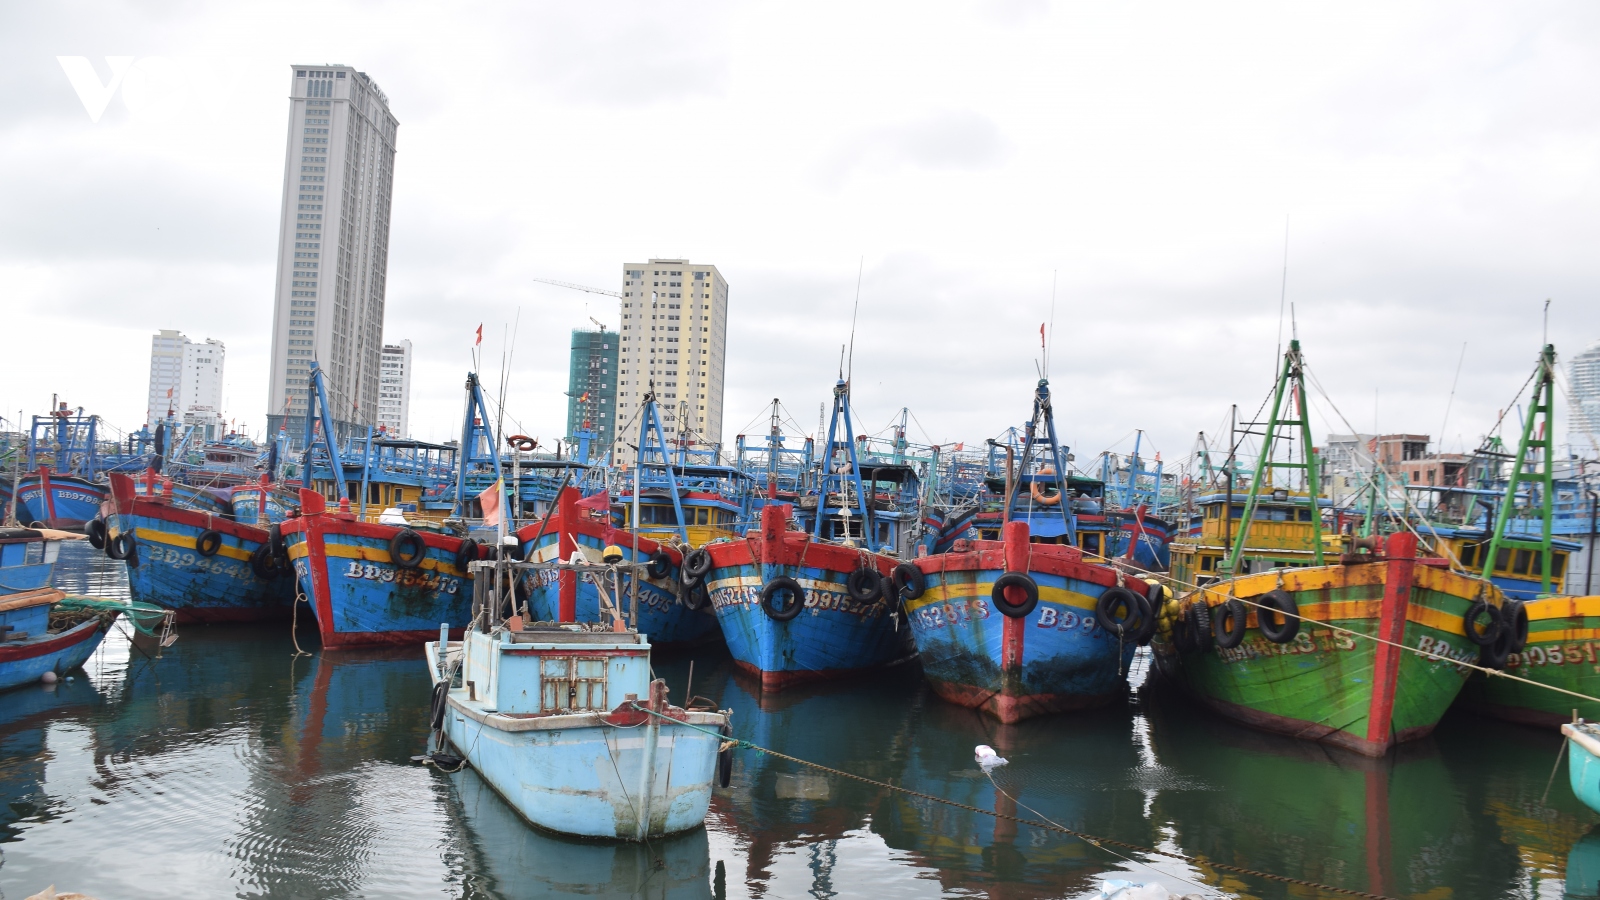 Tàu cá của ngư dân Bình Định bị chìm trên biển, 4 ngư dân được cứu sống